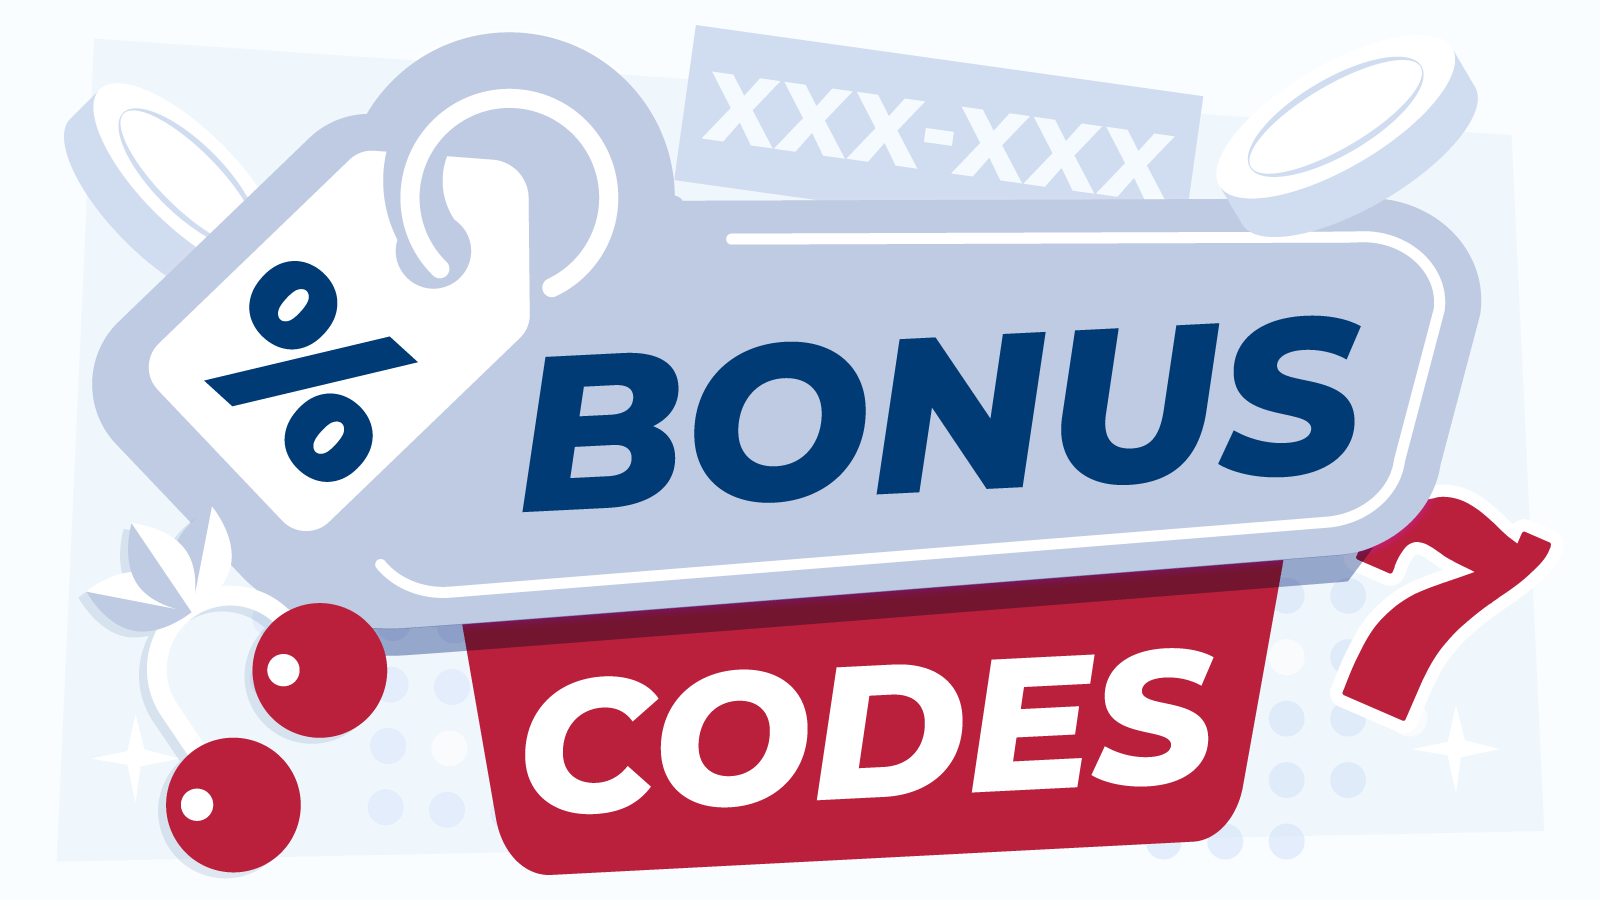 All Bonus Codes